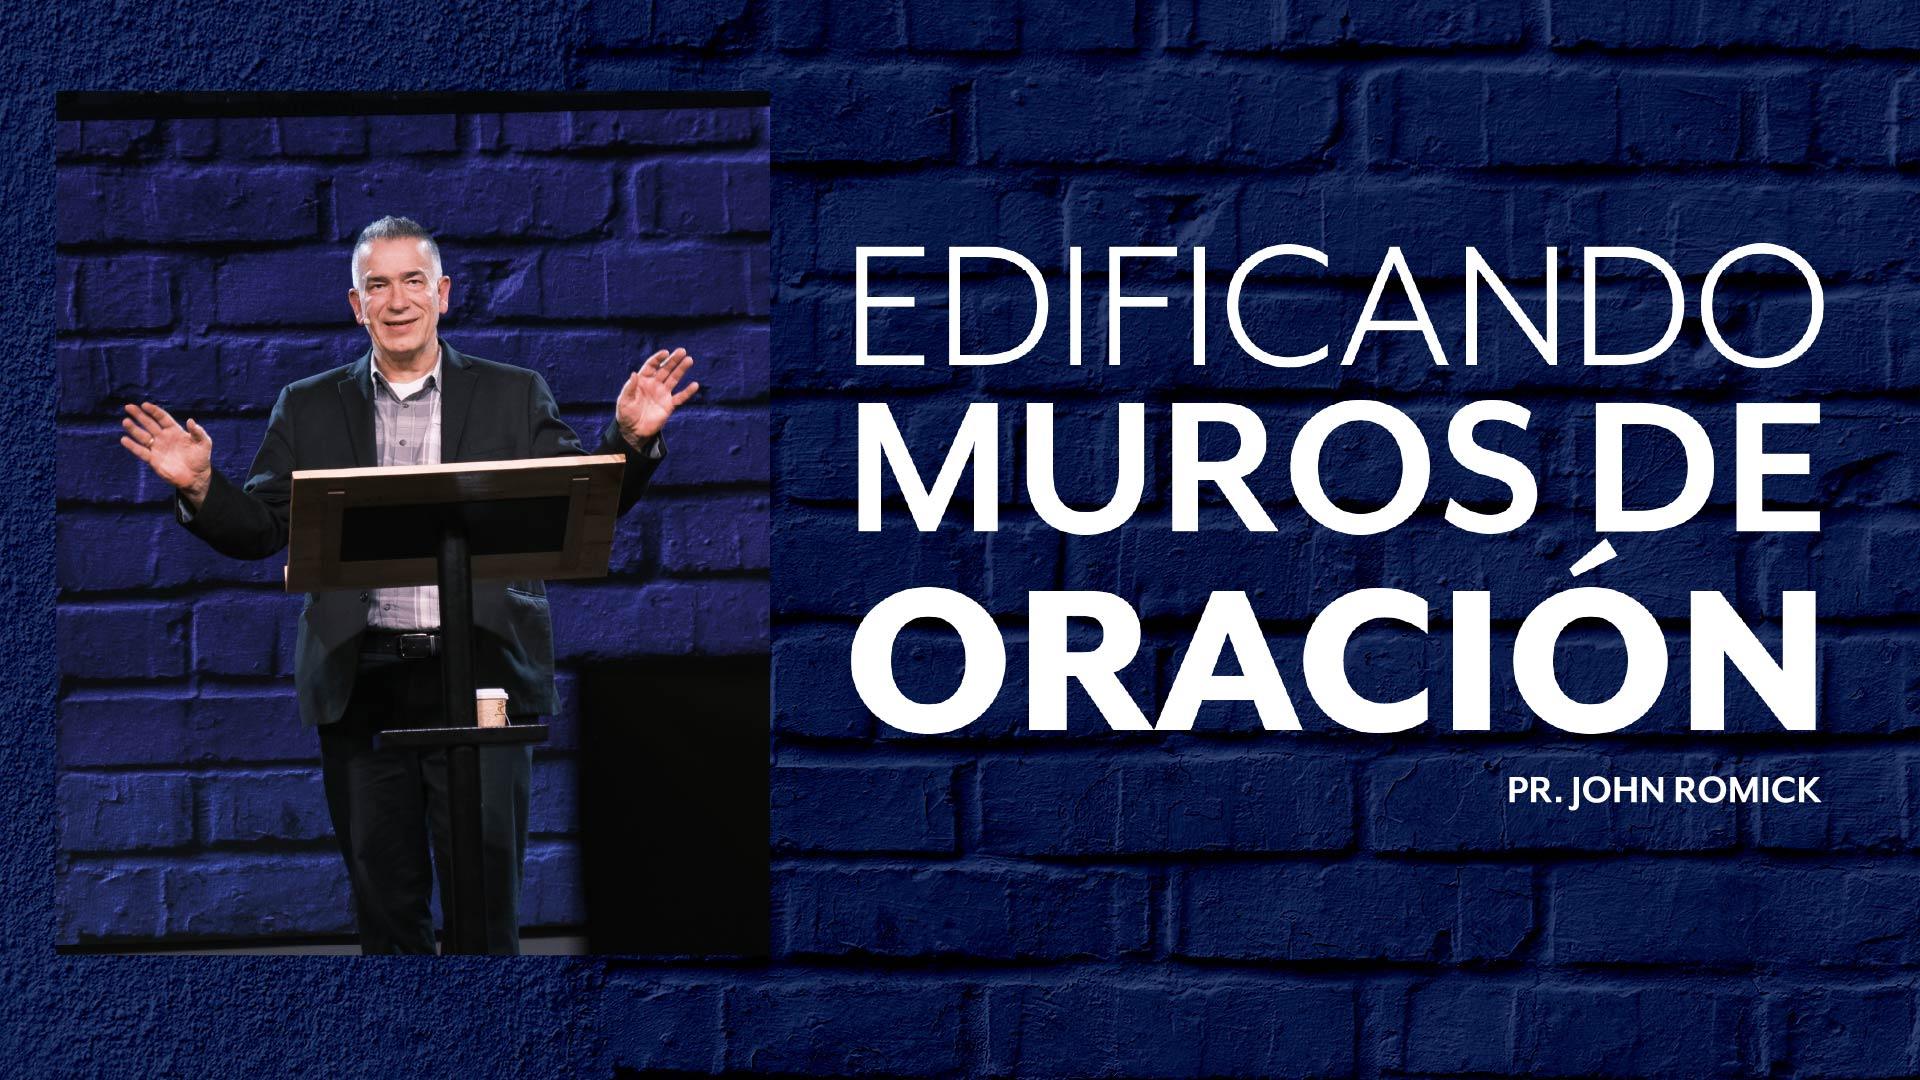 EDIFICANDO MUROS DE ORACIÓN